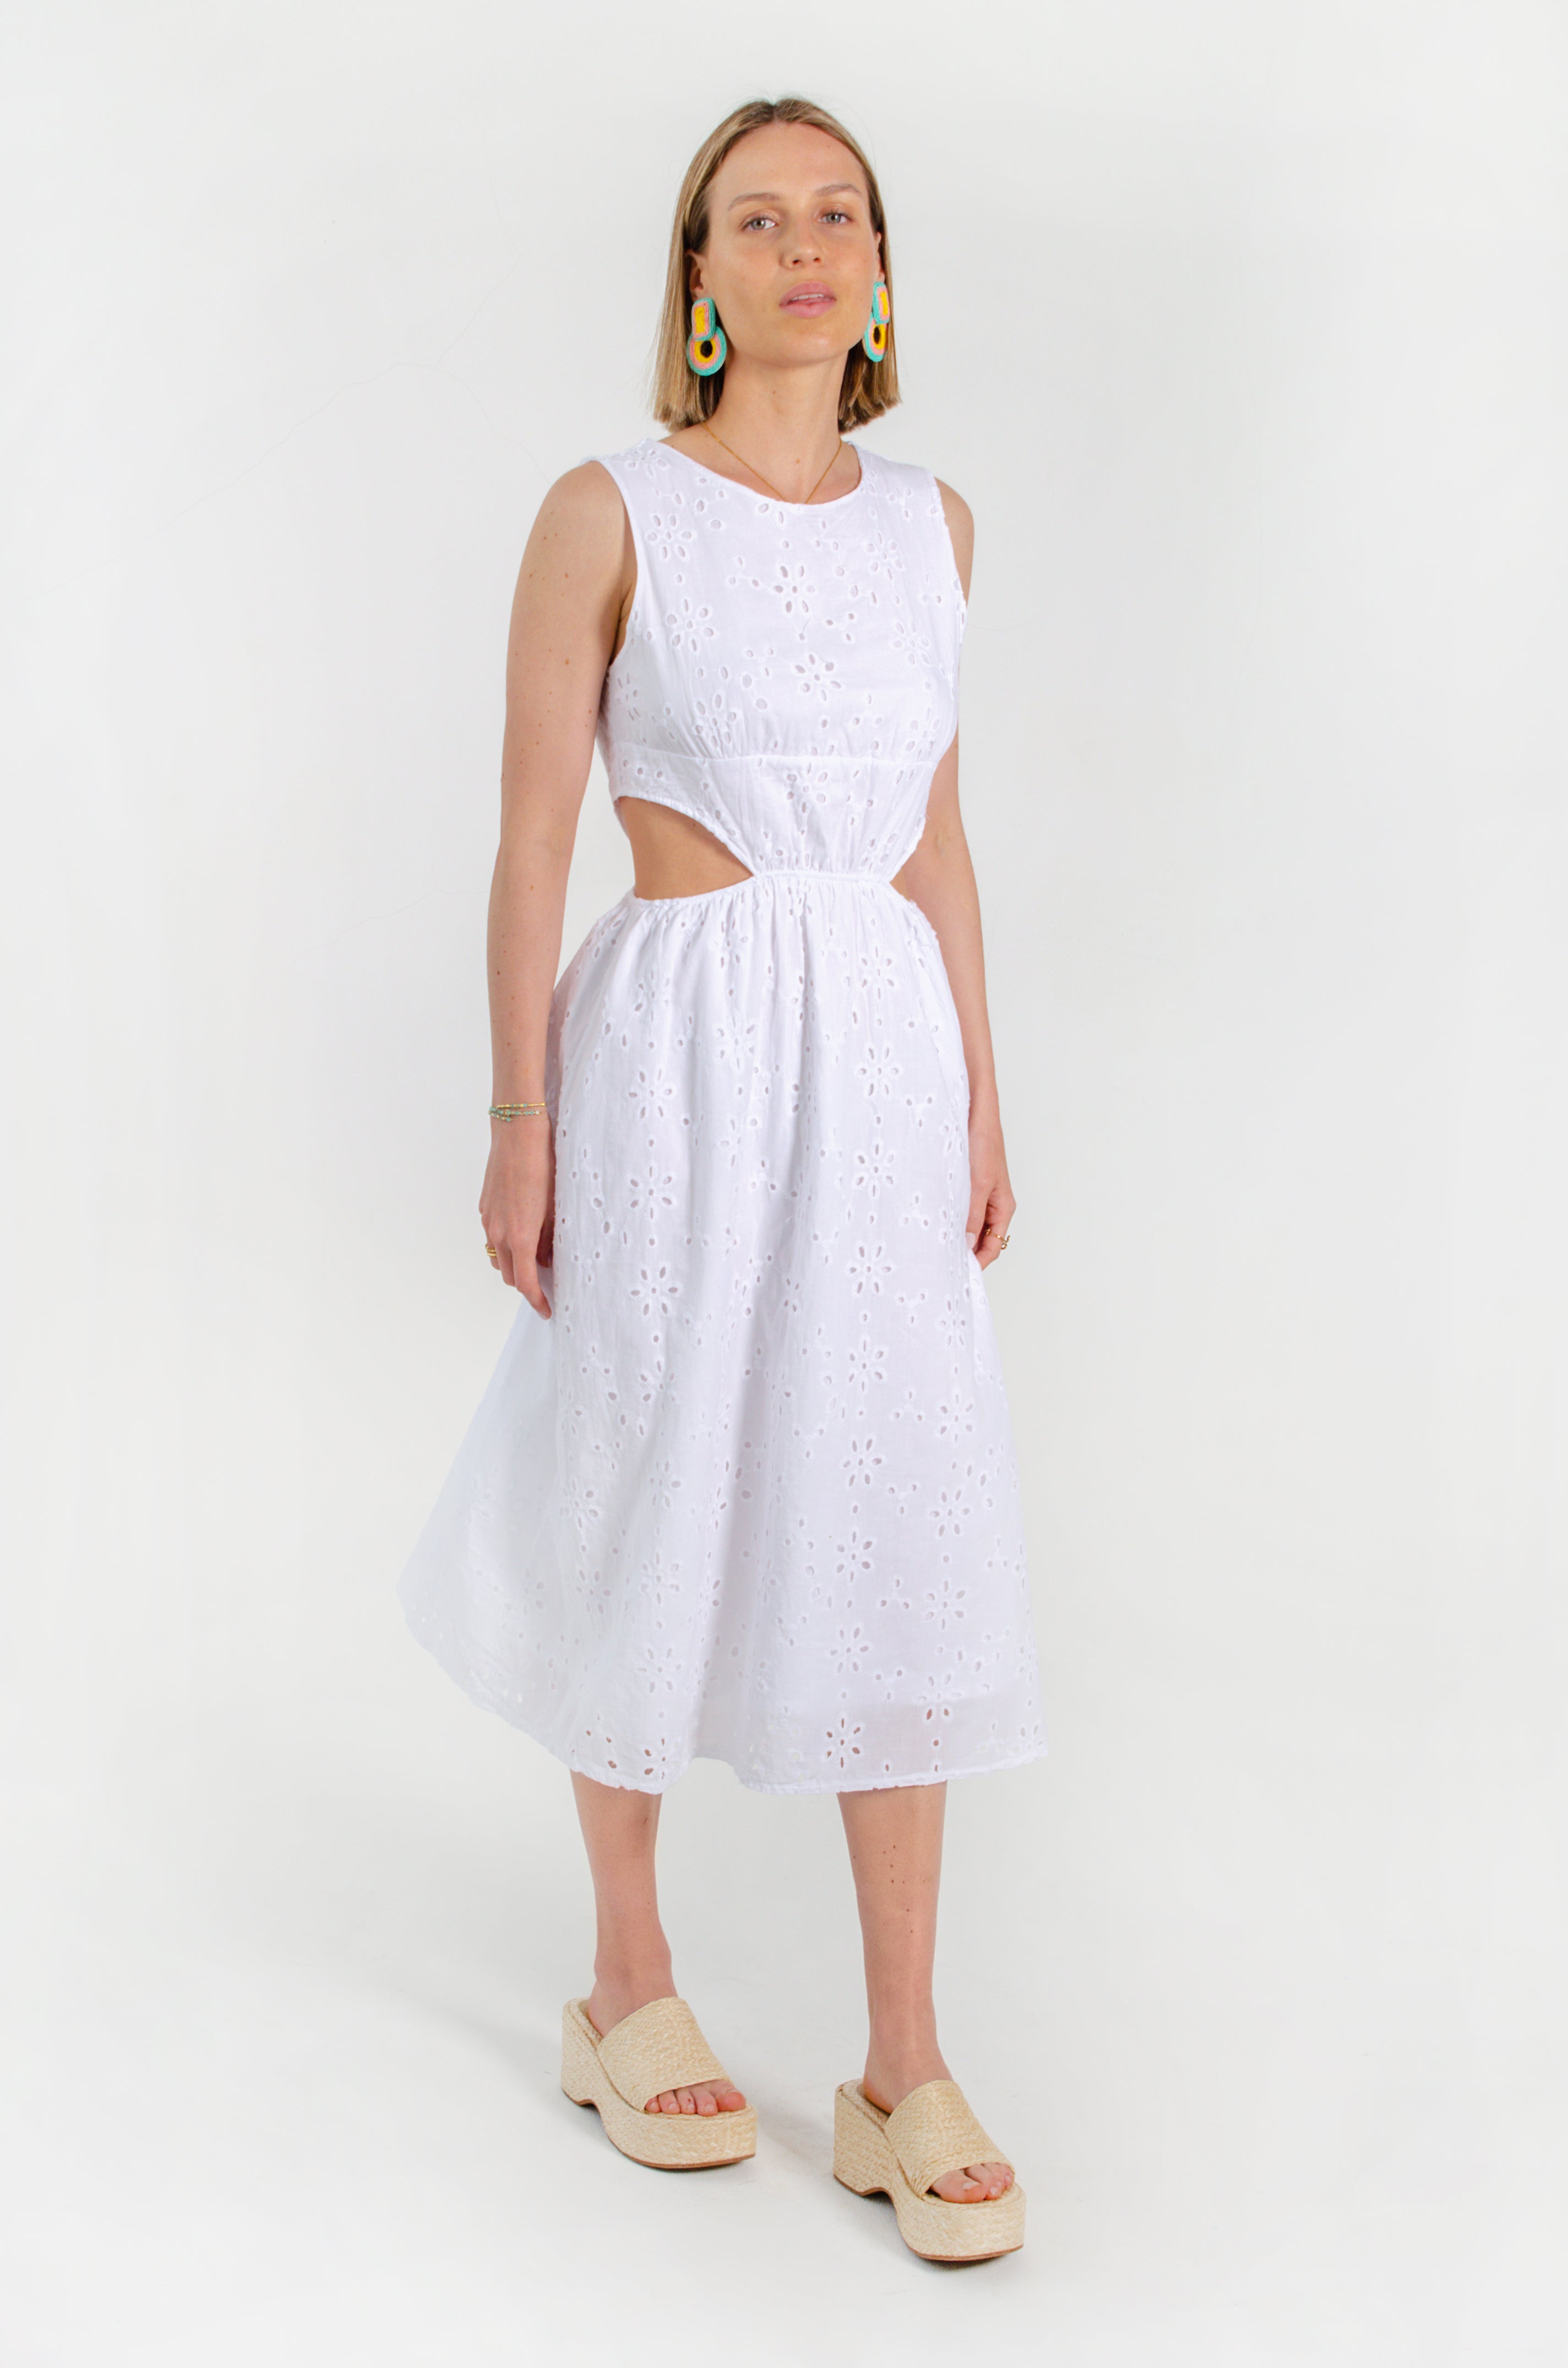 APRIL DRESS // WHITE